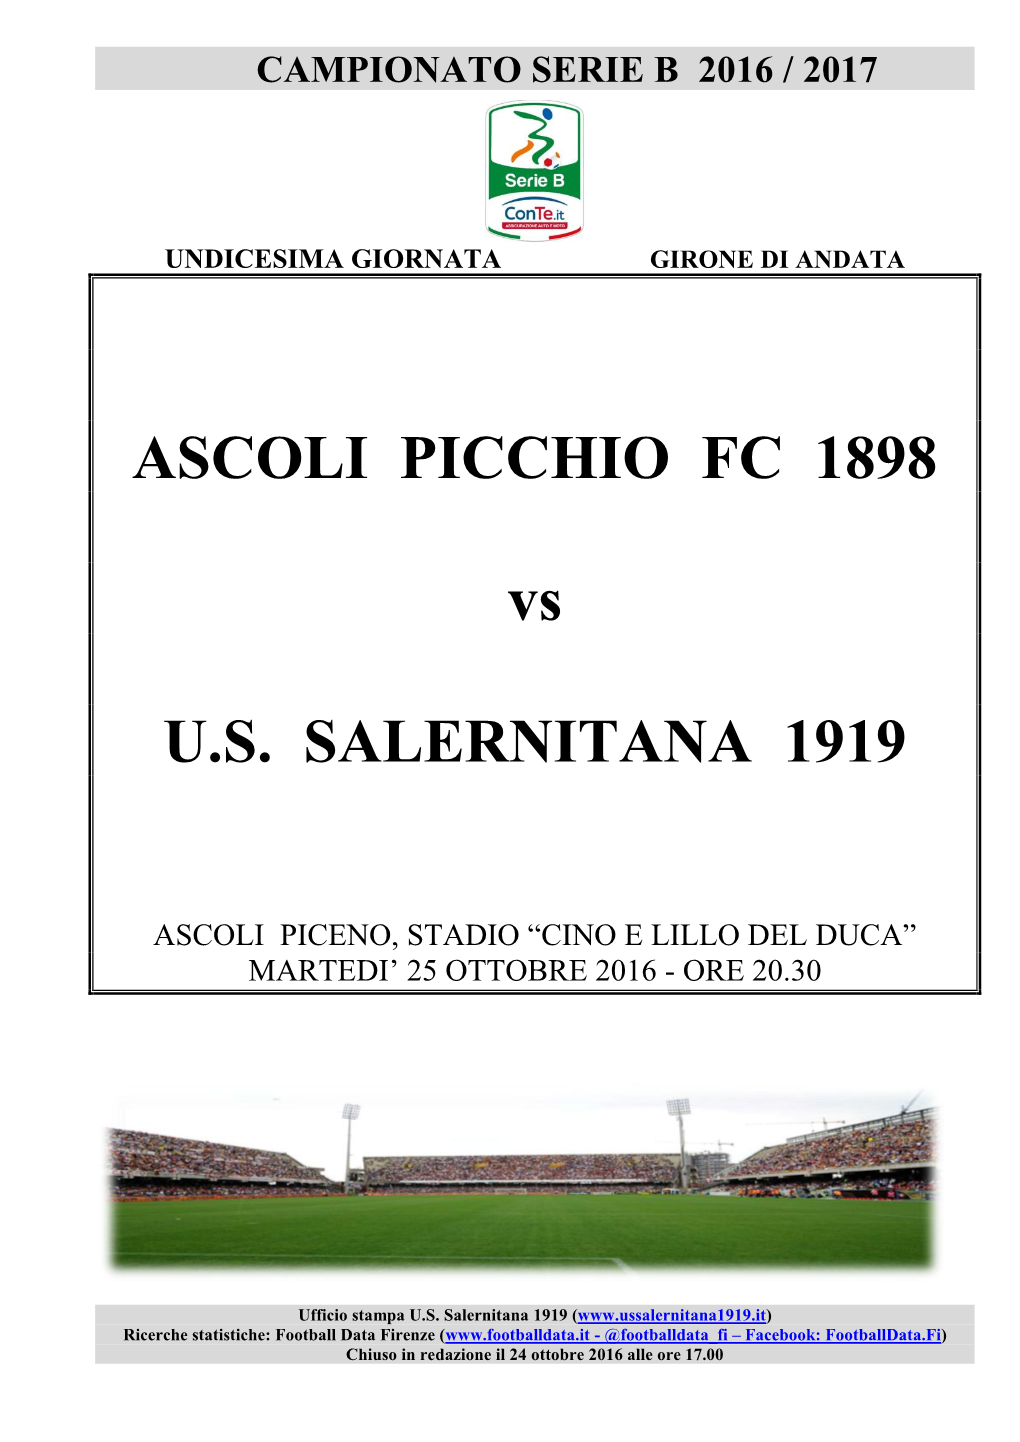 ASCOLI PICCHIO FC 1898 Vs U.S. SALERNITANA 1919